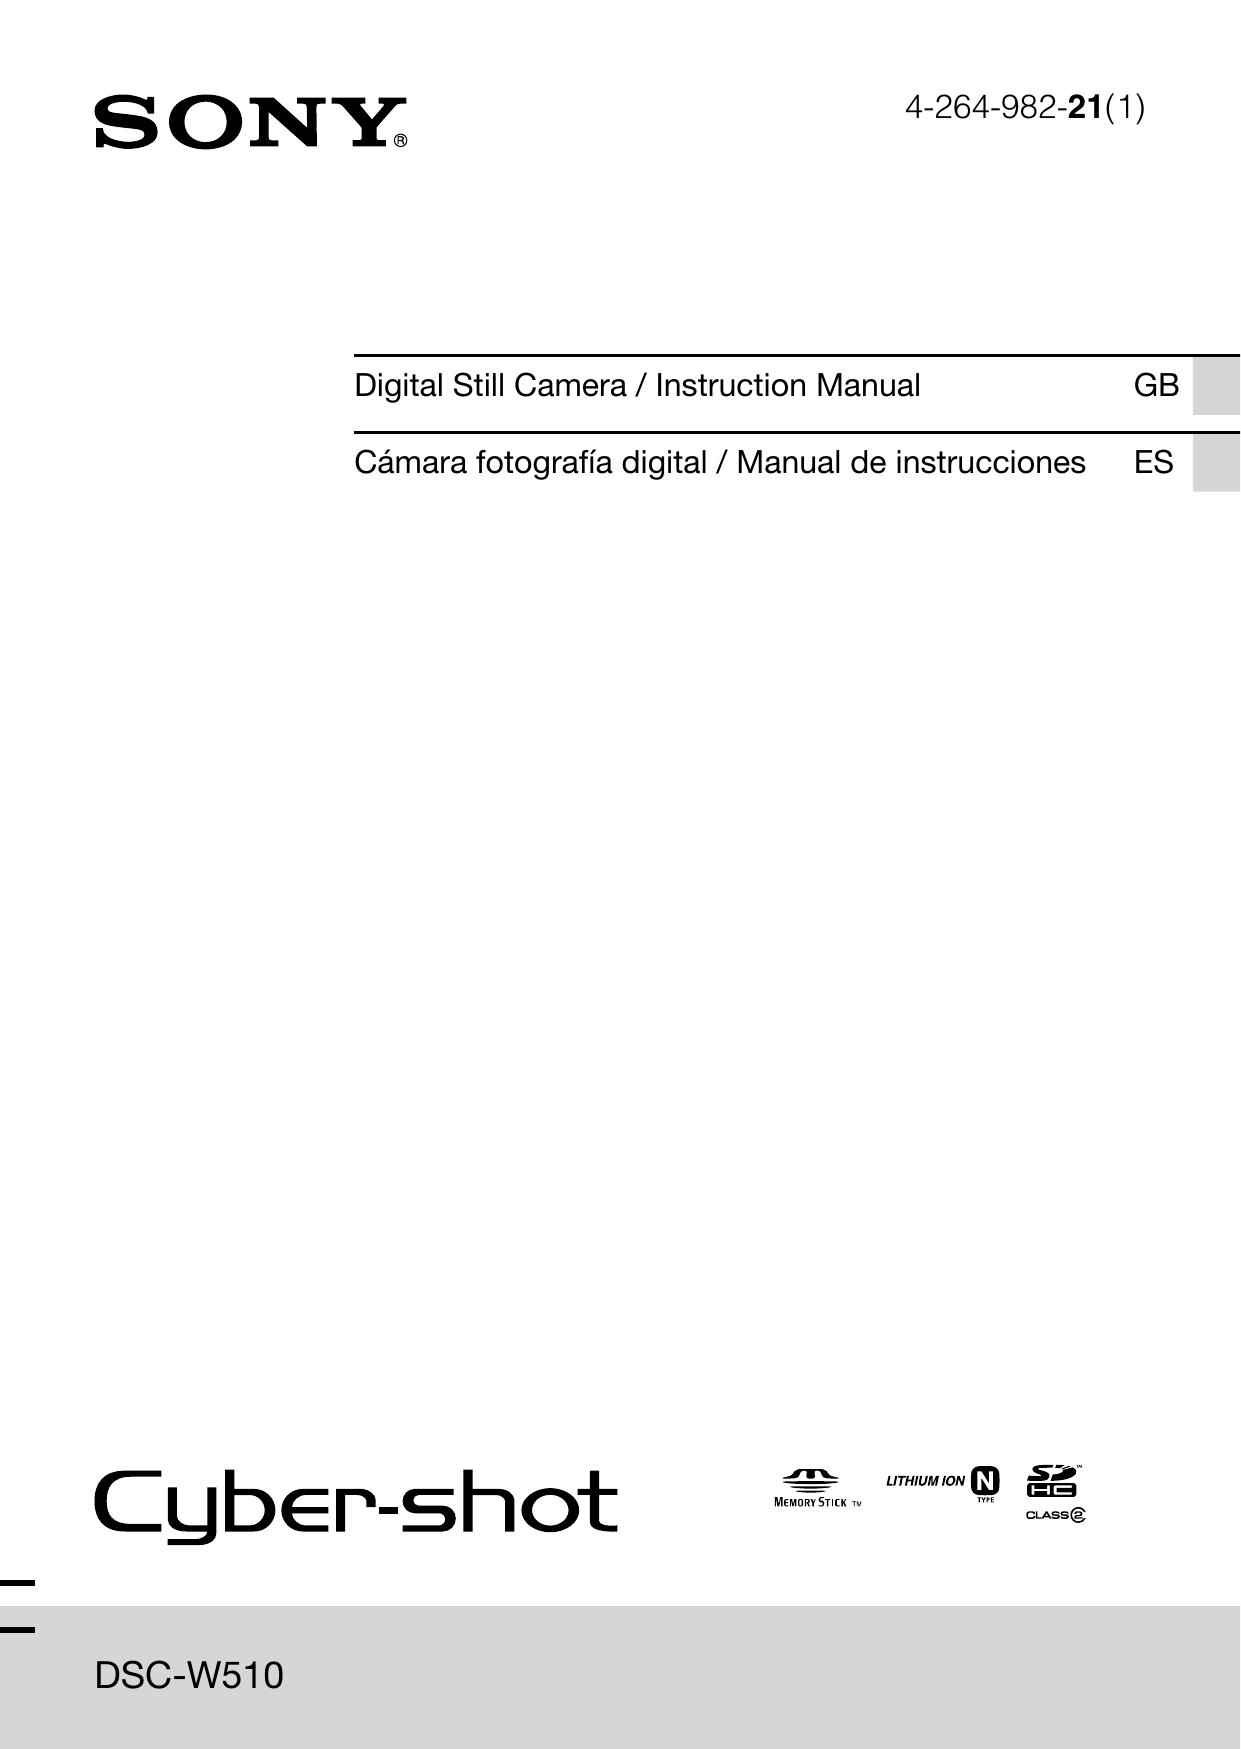 Sony 4-264-982-21 Digital Camera User Manual